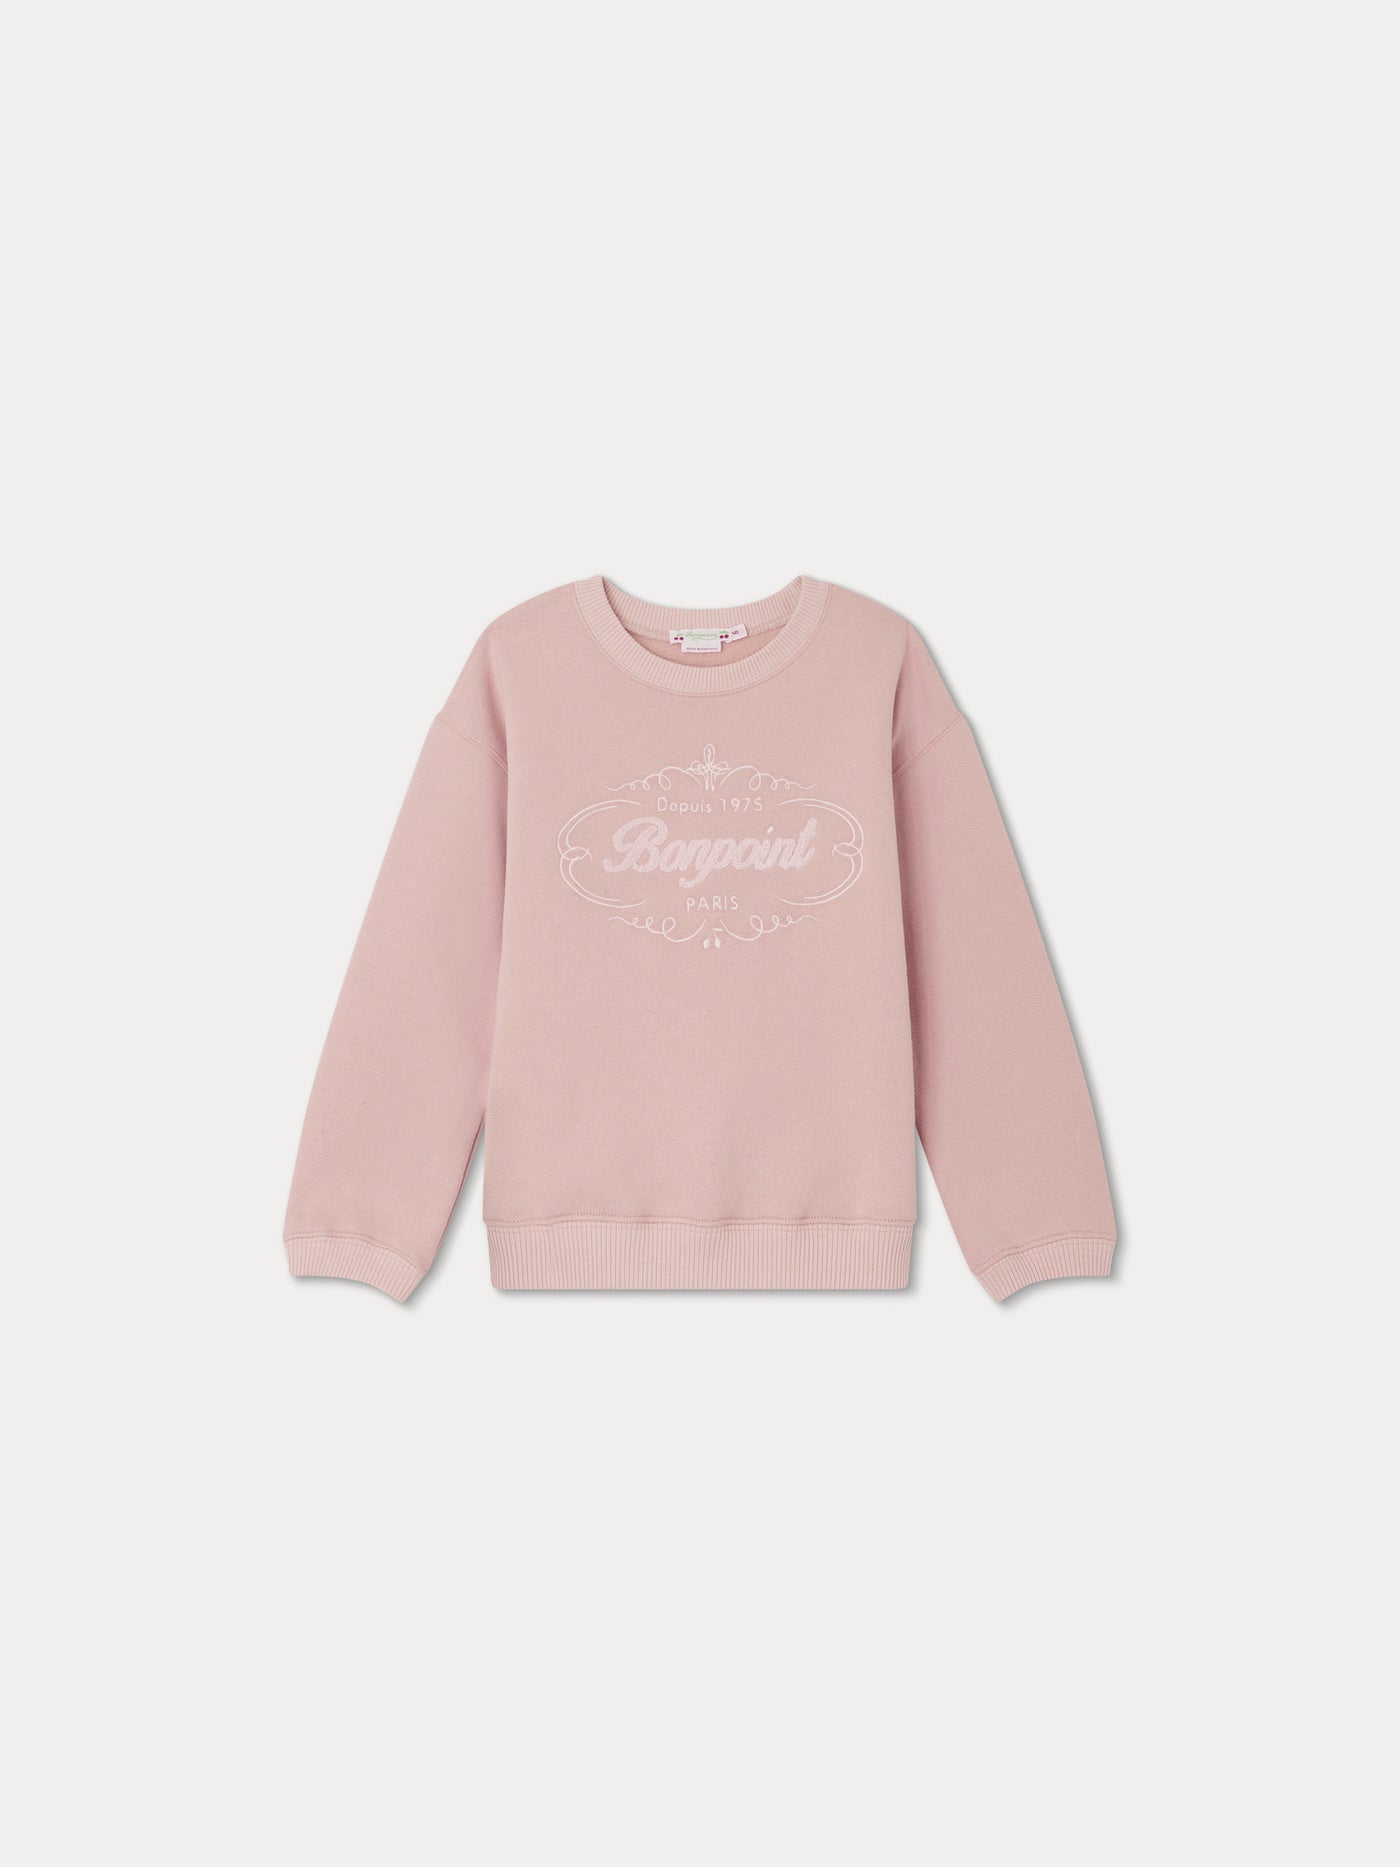 Tayla Sweatshirt faded pink